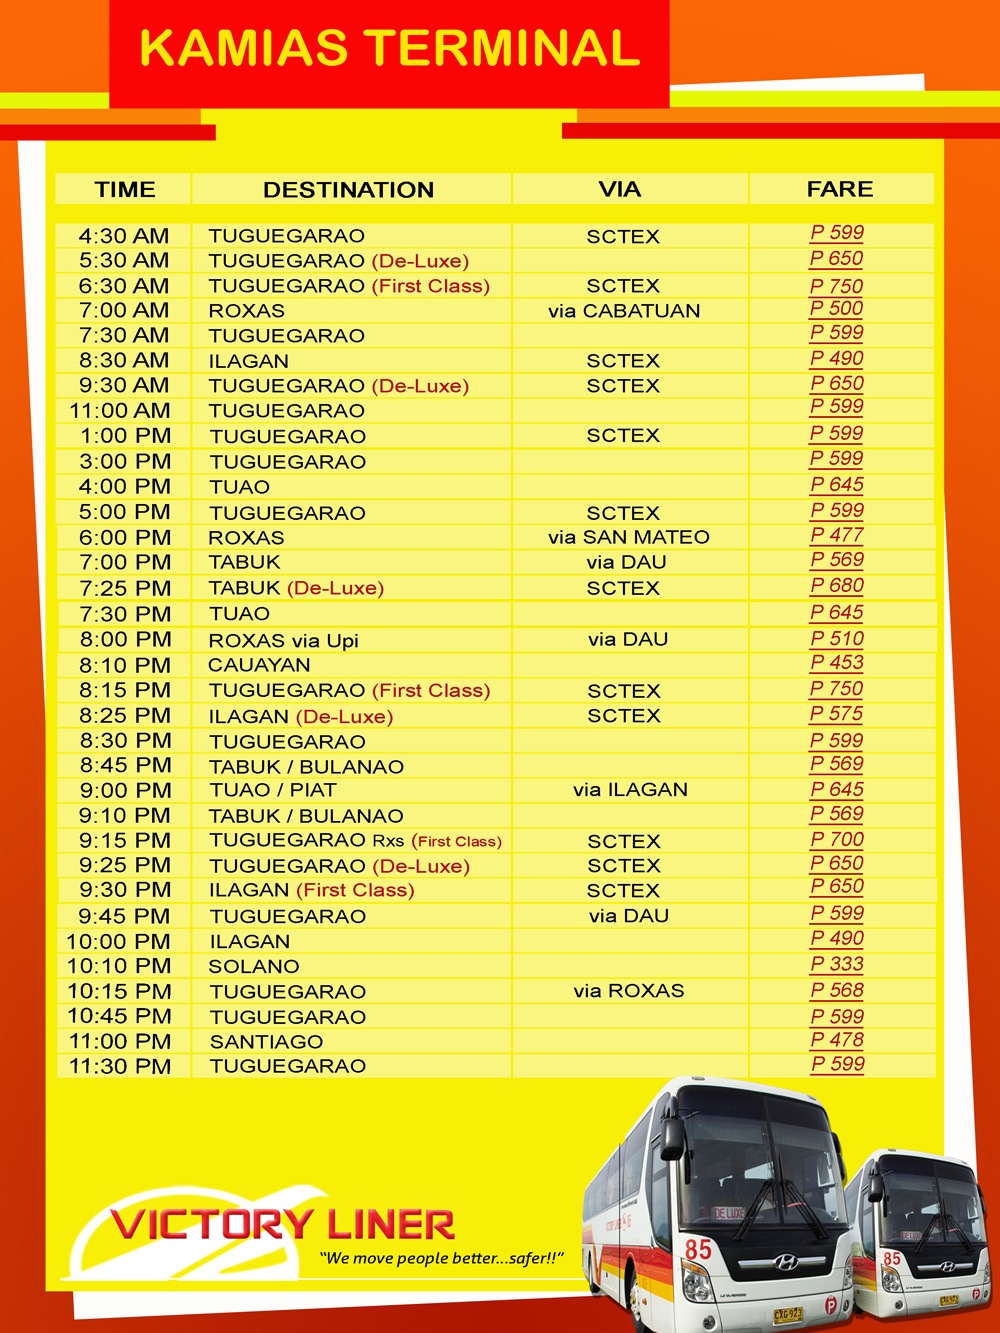 Kamias Victory Liner Deluxe Bus Schedule • Blog